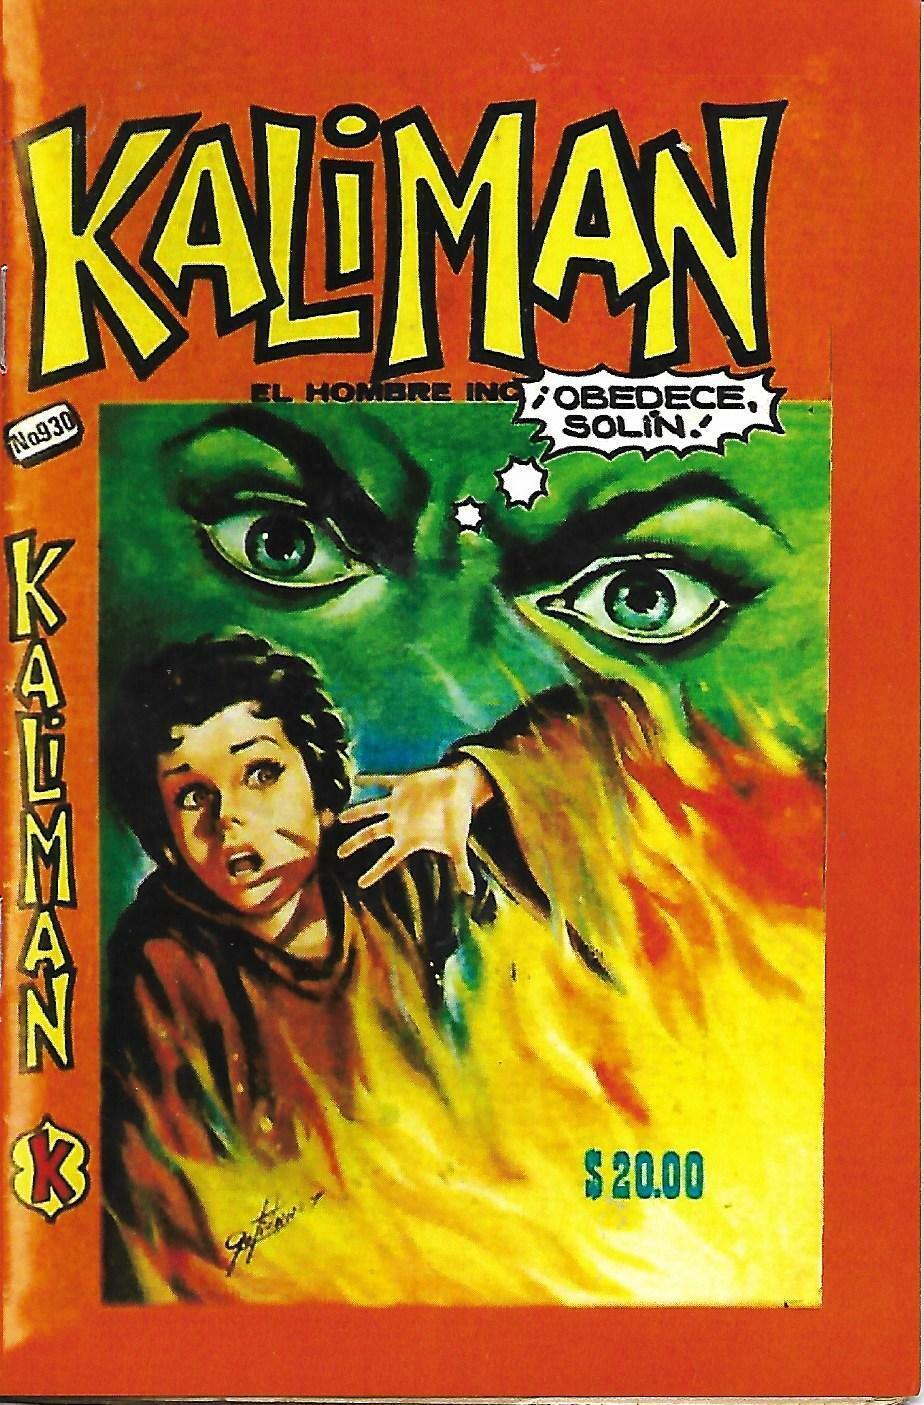 Kaliman El Hombre Increible #930 - Septiembre 23, 1983 - Mexico 